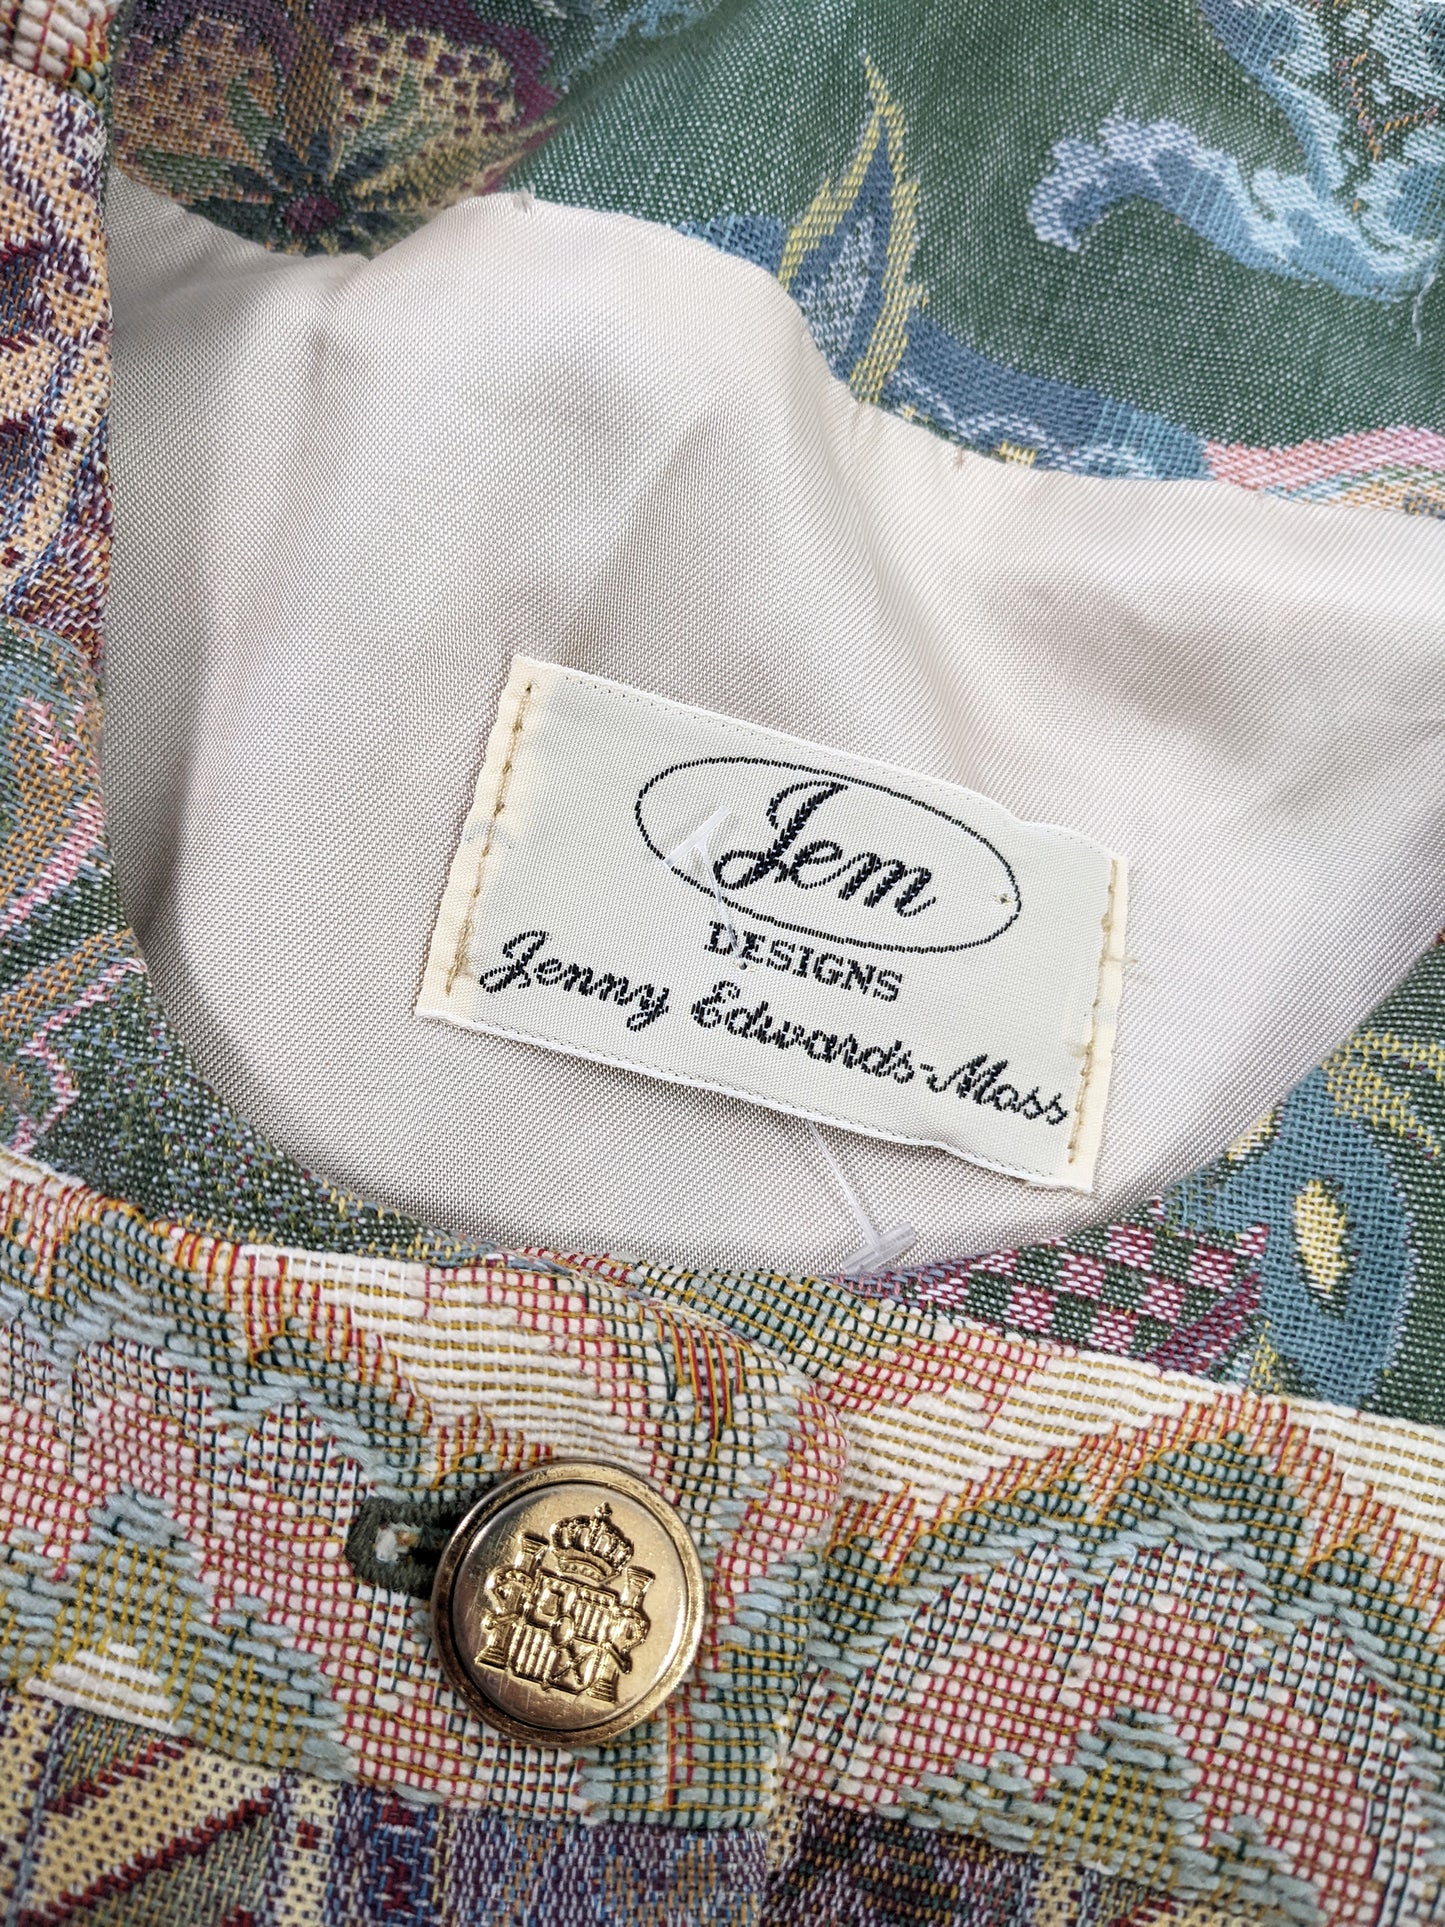 Jenny Edwards Moss Vintage Patchwork Tapestry Jacket, 1990s